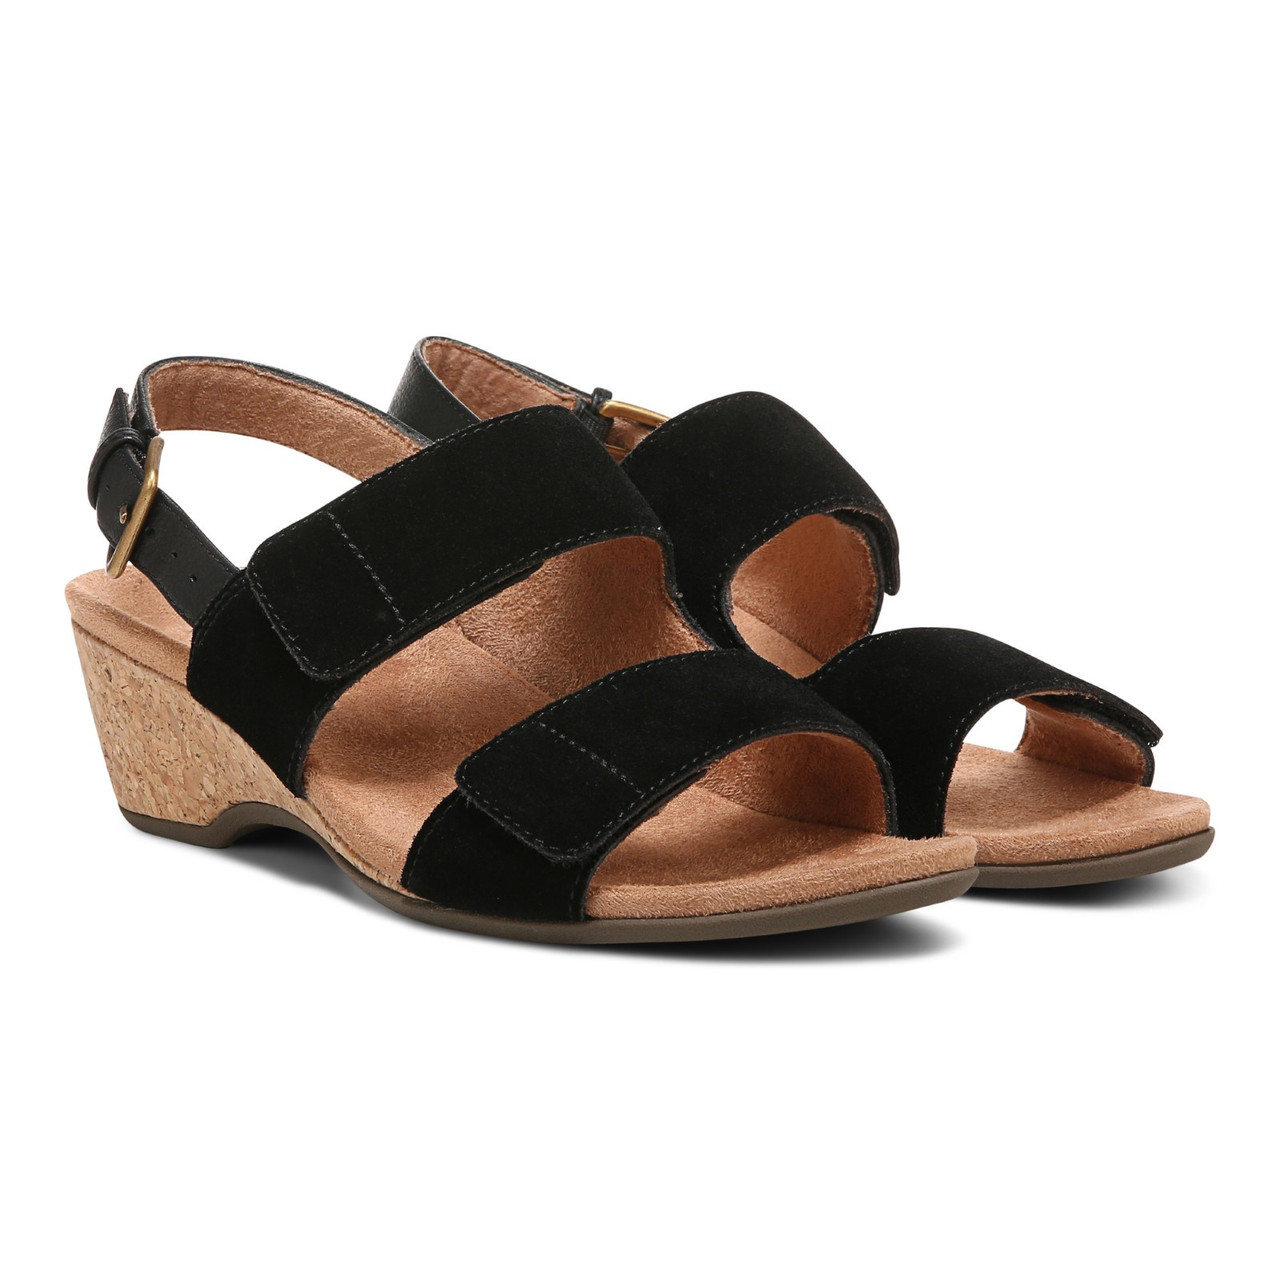 Cute Black Wedges - Suede Heels - Ankle Strap Wedge Sandals - Lulus